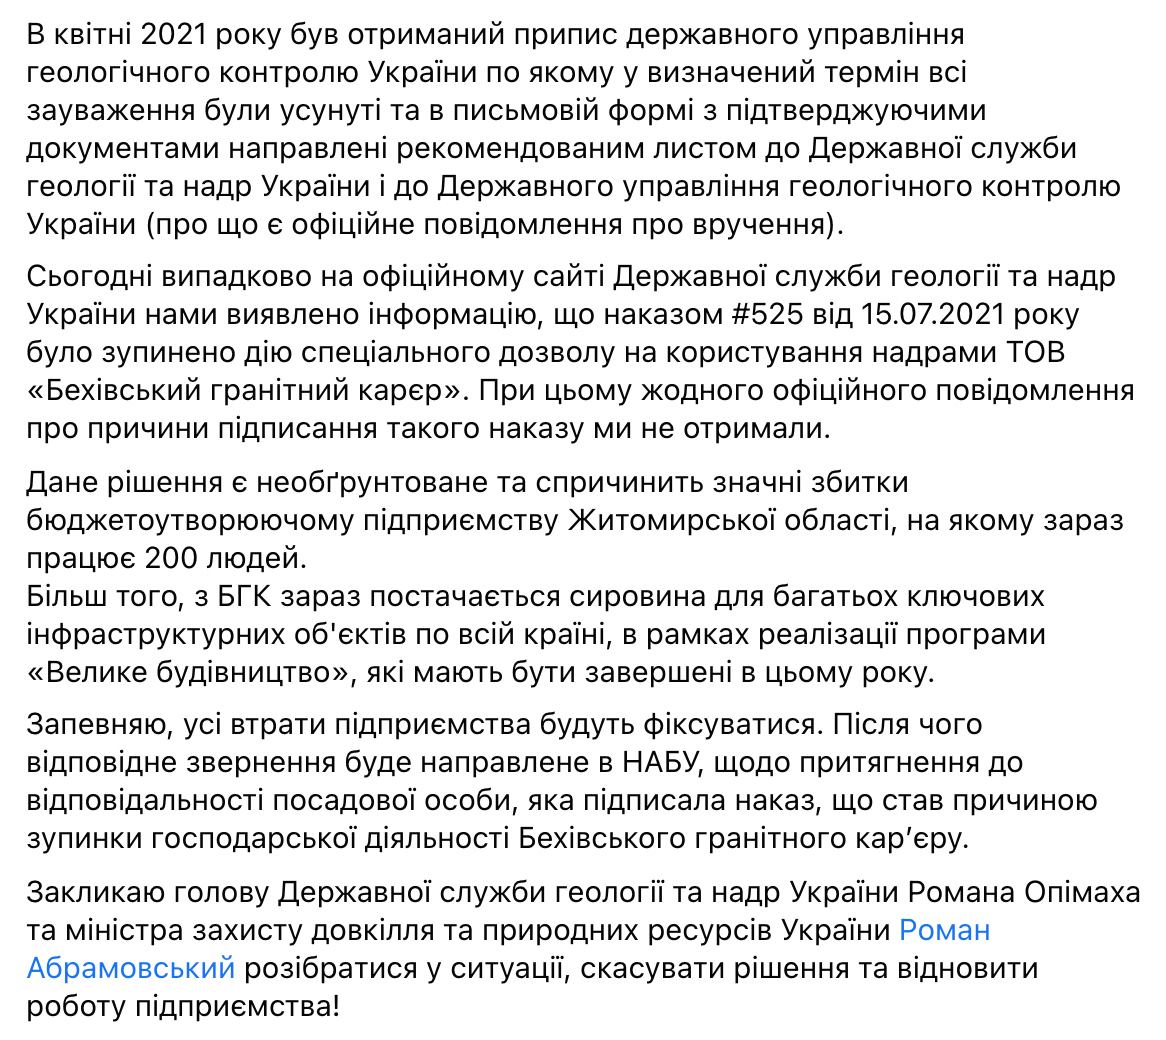 «Вредительское решение»: Саакашвили раскритиковал главу Госгеонедр за остановку карьера в Житомирской области - фото 5